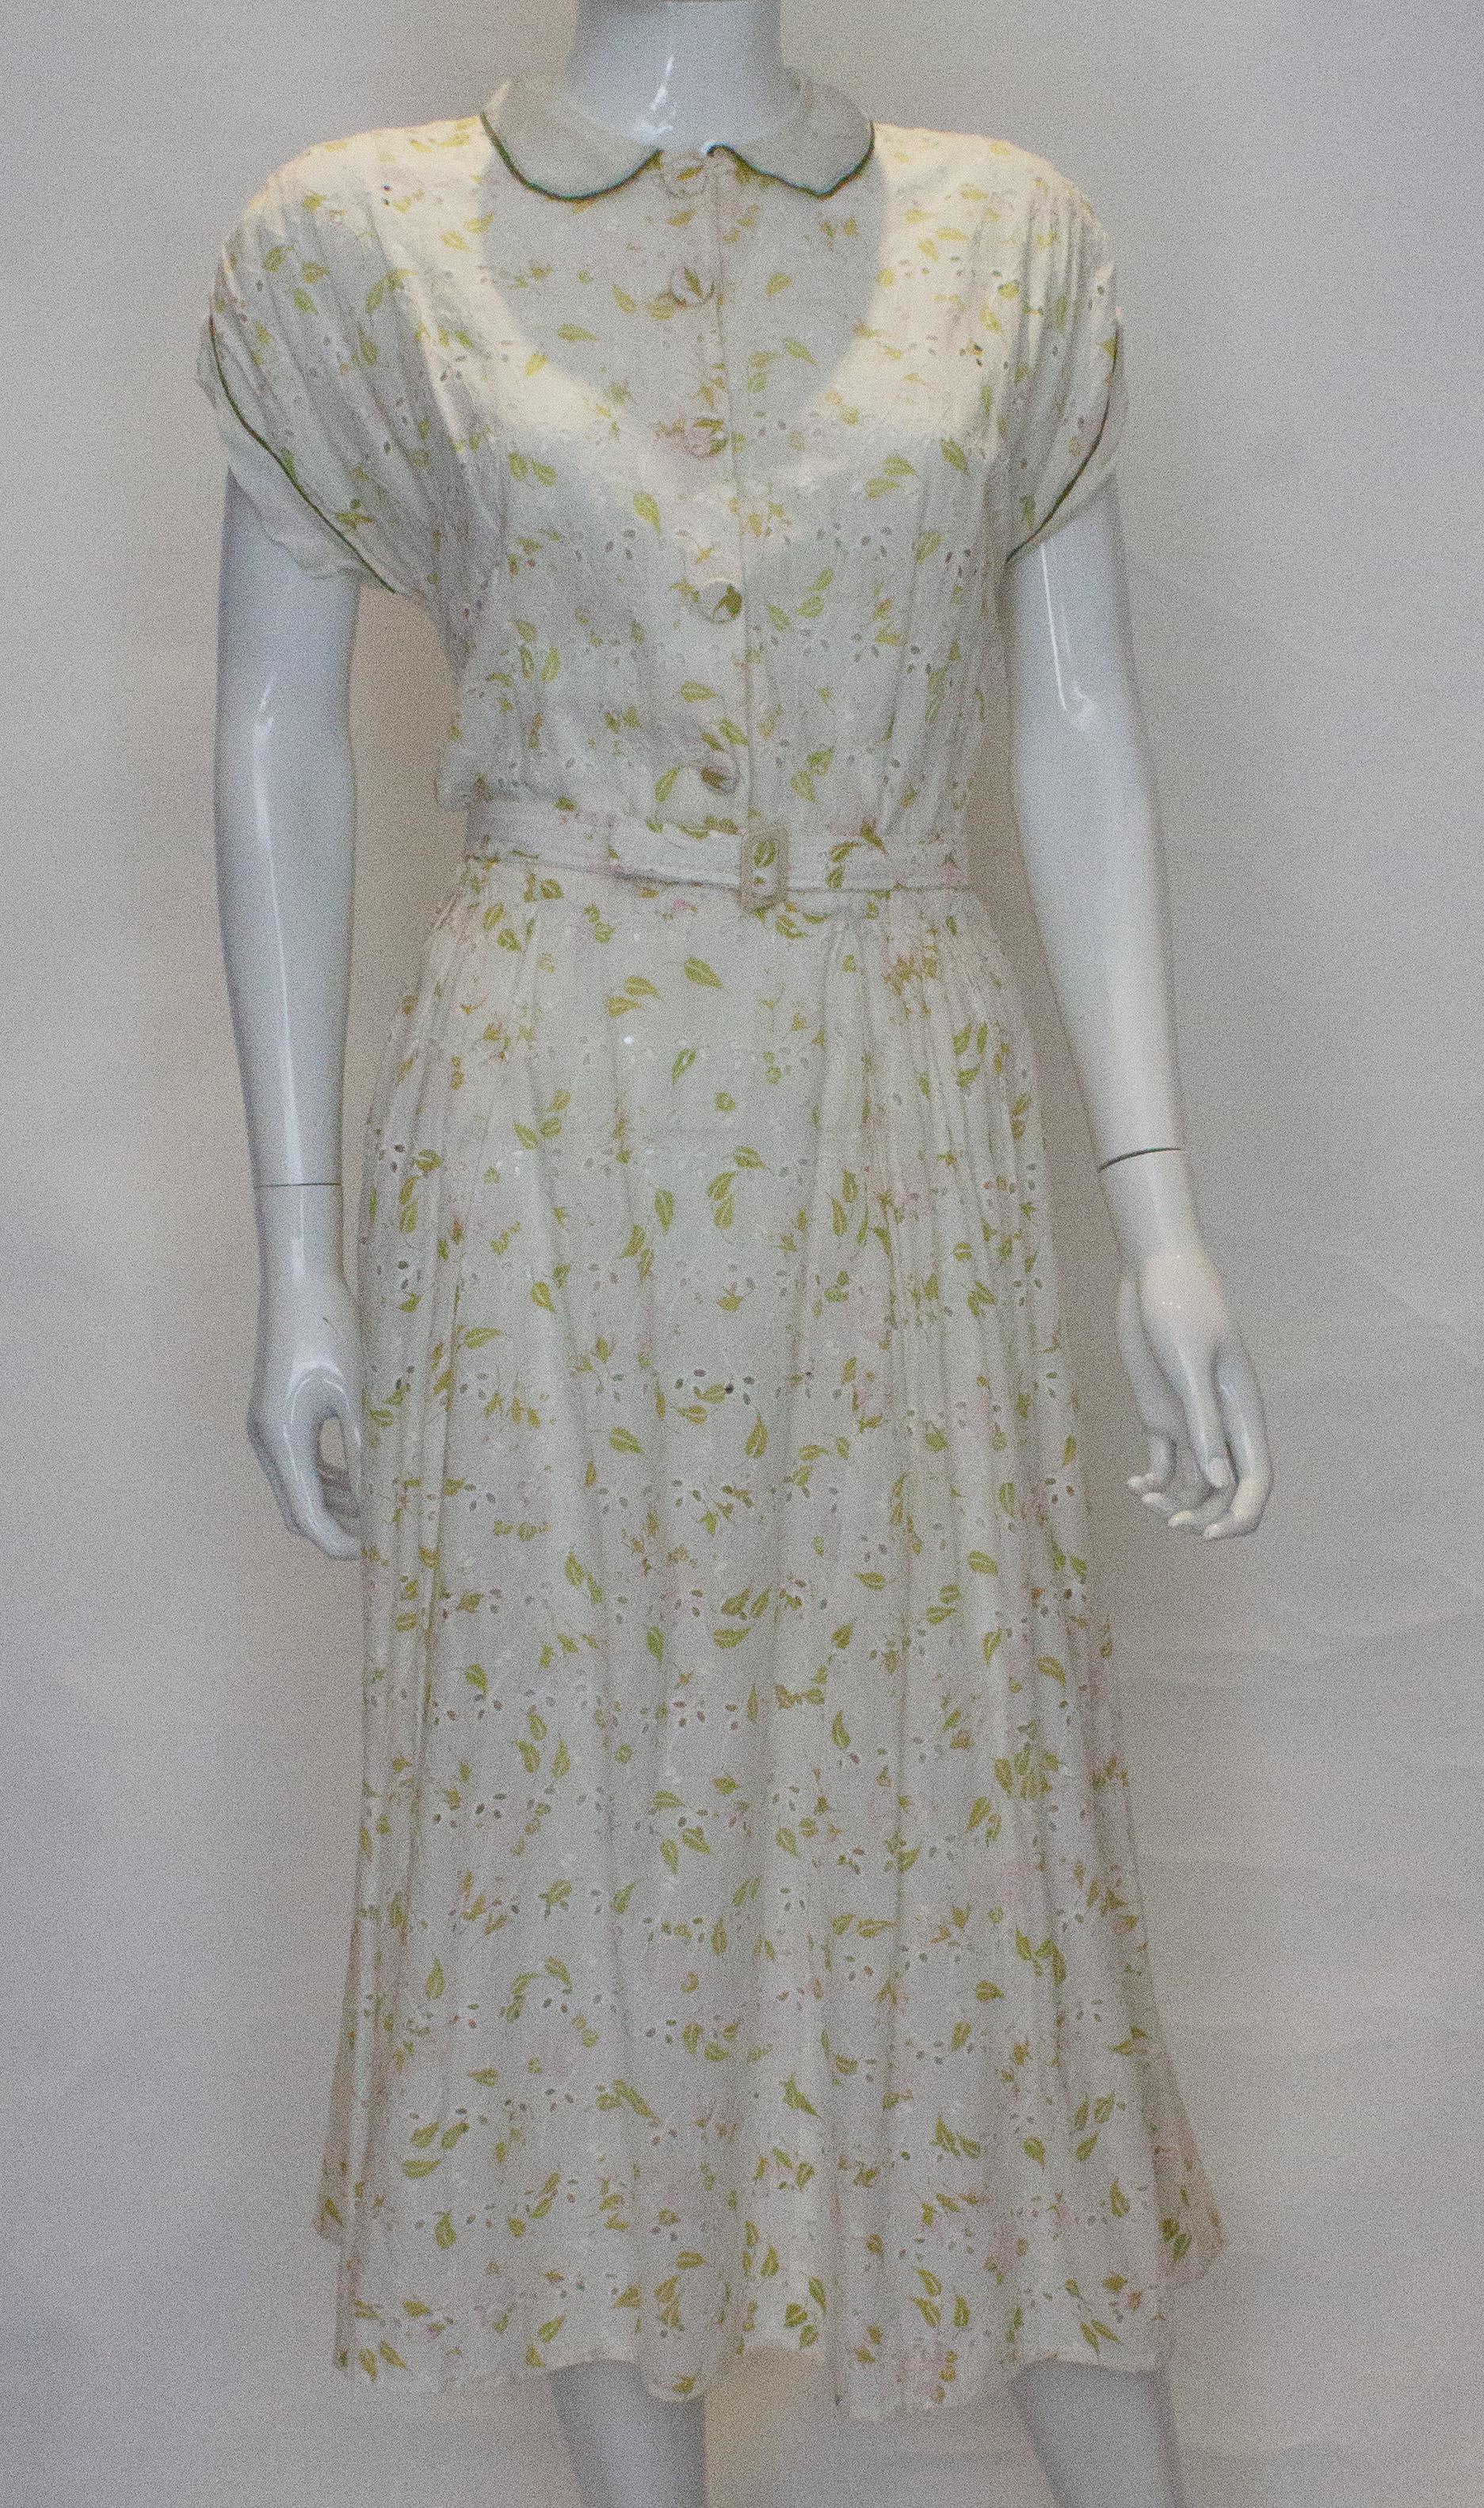 Ein hübsches Vintage-Baumwollkleid von Nelly Don. Das Kleid aus weißer Baumwolle mit rosafarbenen und grünen Details hat einen Rundkragen, eine Knopfleiste, lange Ärmel und einen seitlichen Reißverschluss.